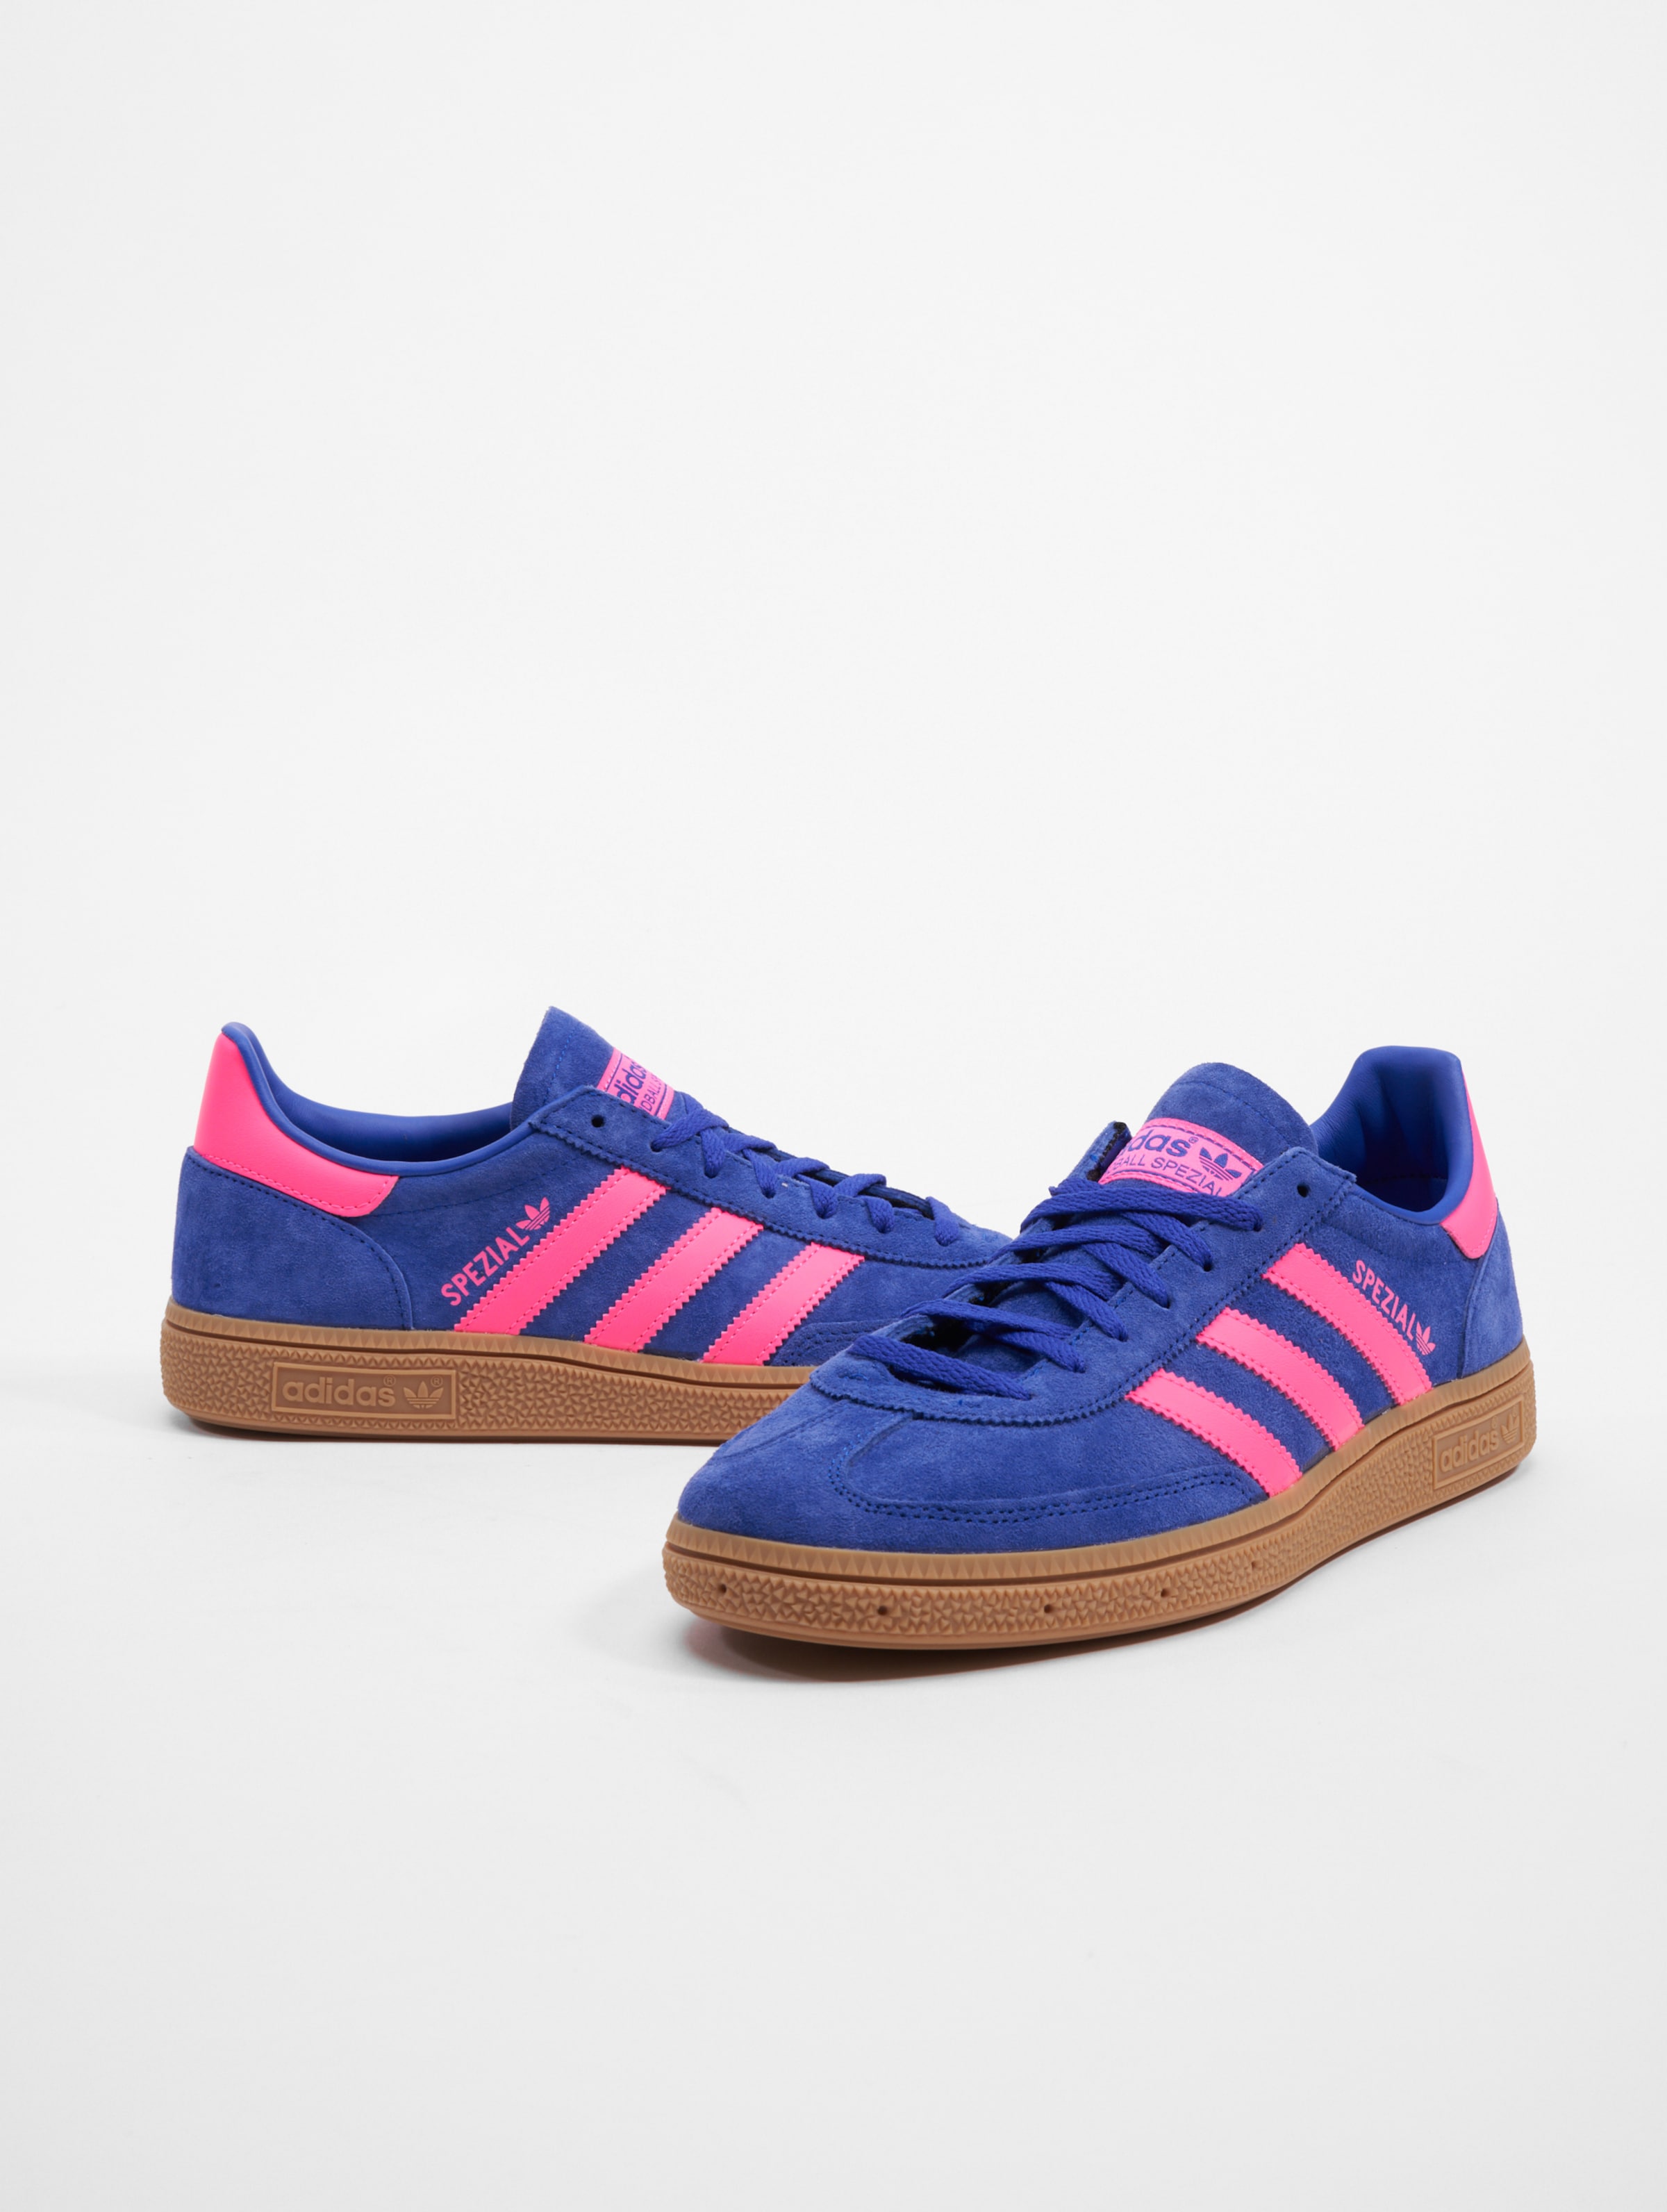 adidas Originals Handball Spezial Sneakers Frauen,Männer,Unisex op kleur blauw, Maat 37 1/3